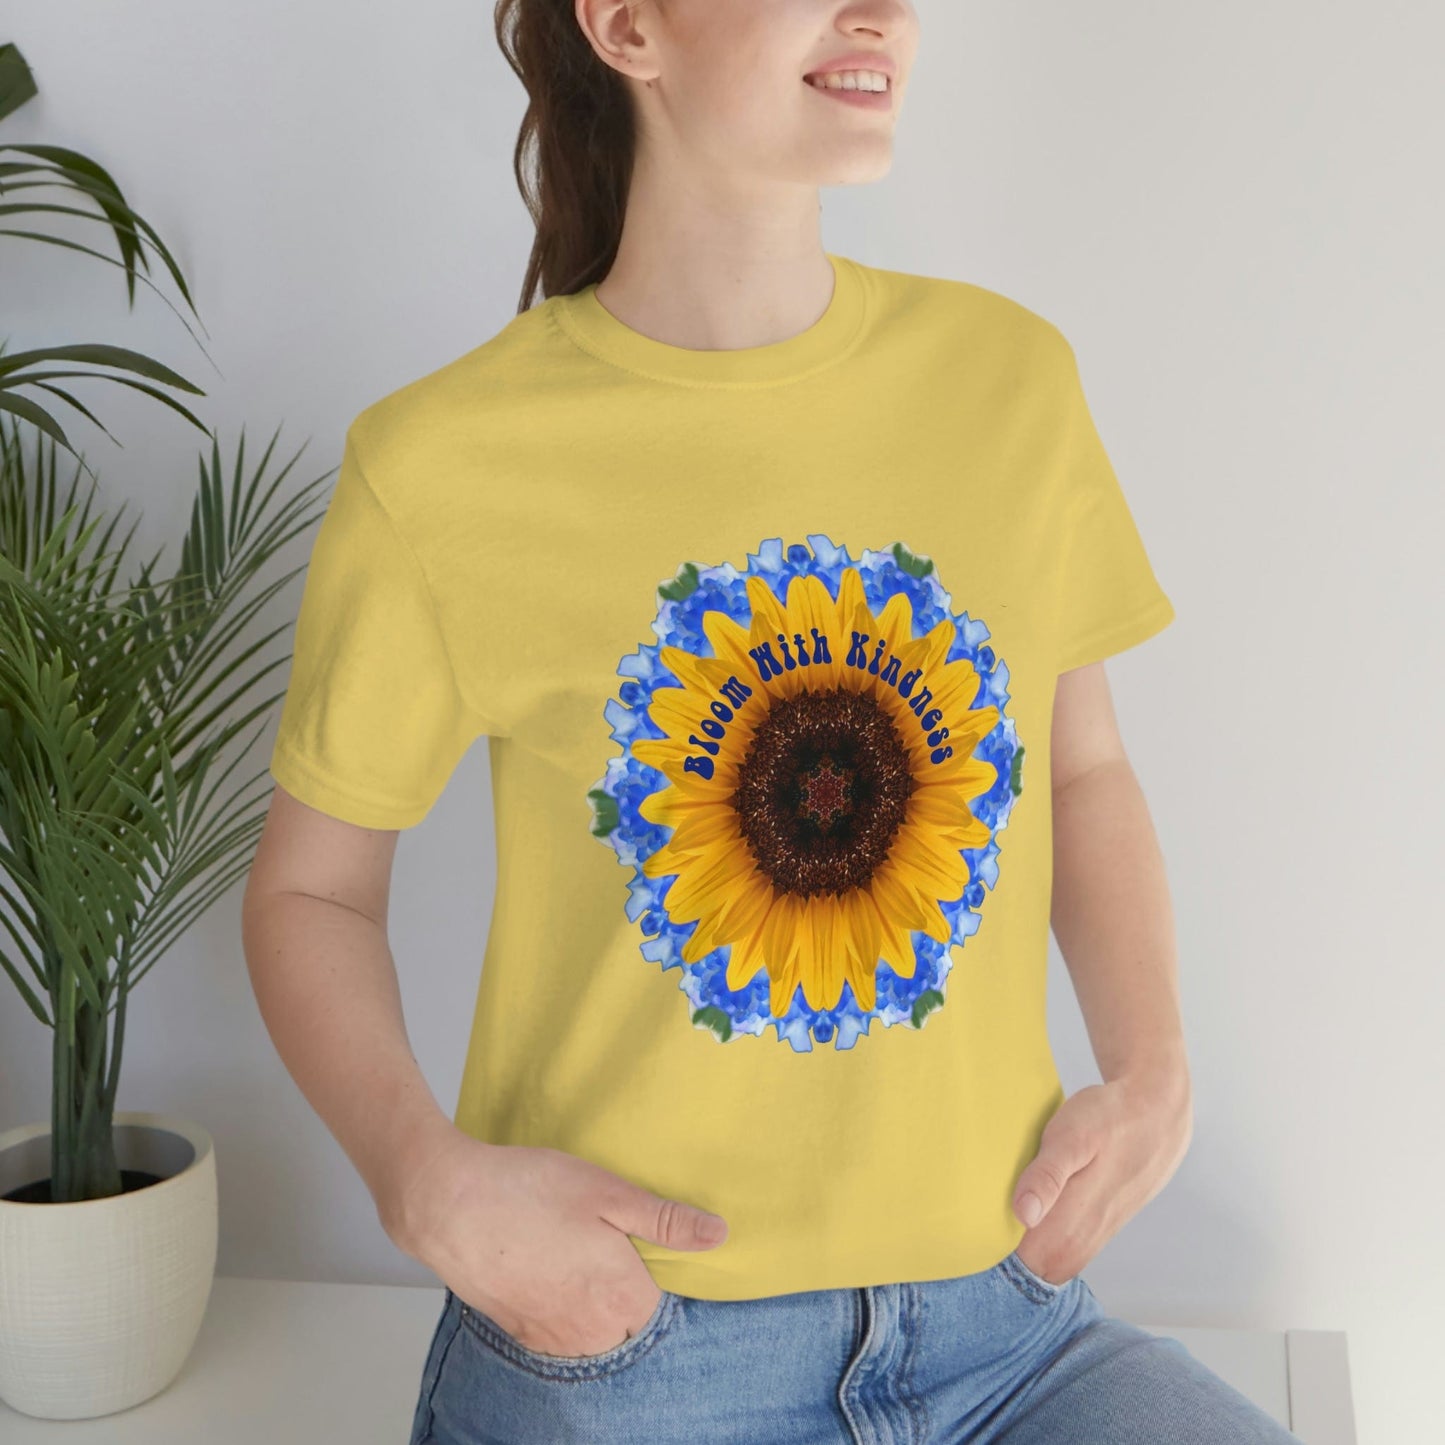 Sunflower TShirt, Top Best Selling Shirts, Zen Poet Shirt, Kawaii Cottage Core Shirt, Fun Shirt Designs, Cute Shirts Teens, Kindness T Shirt